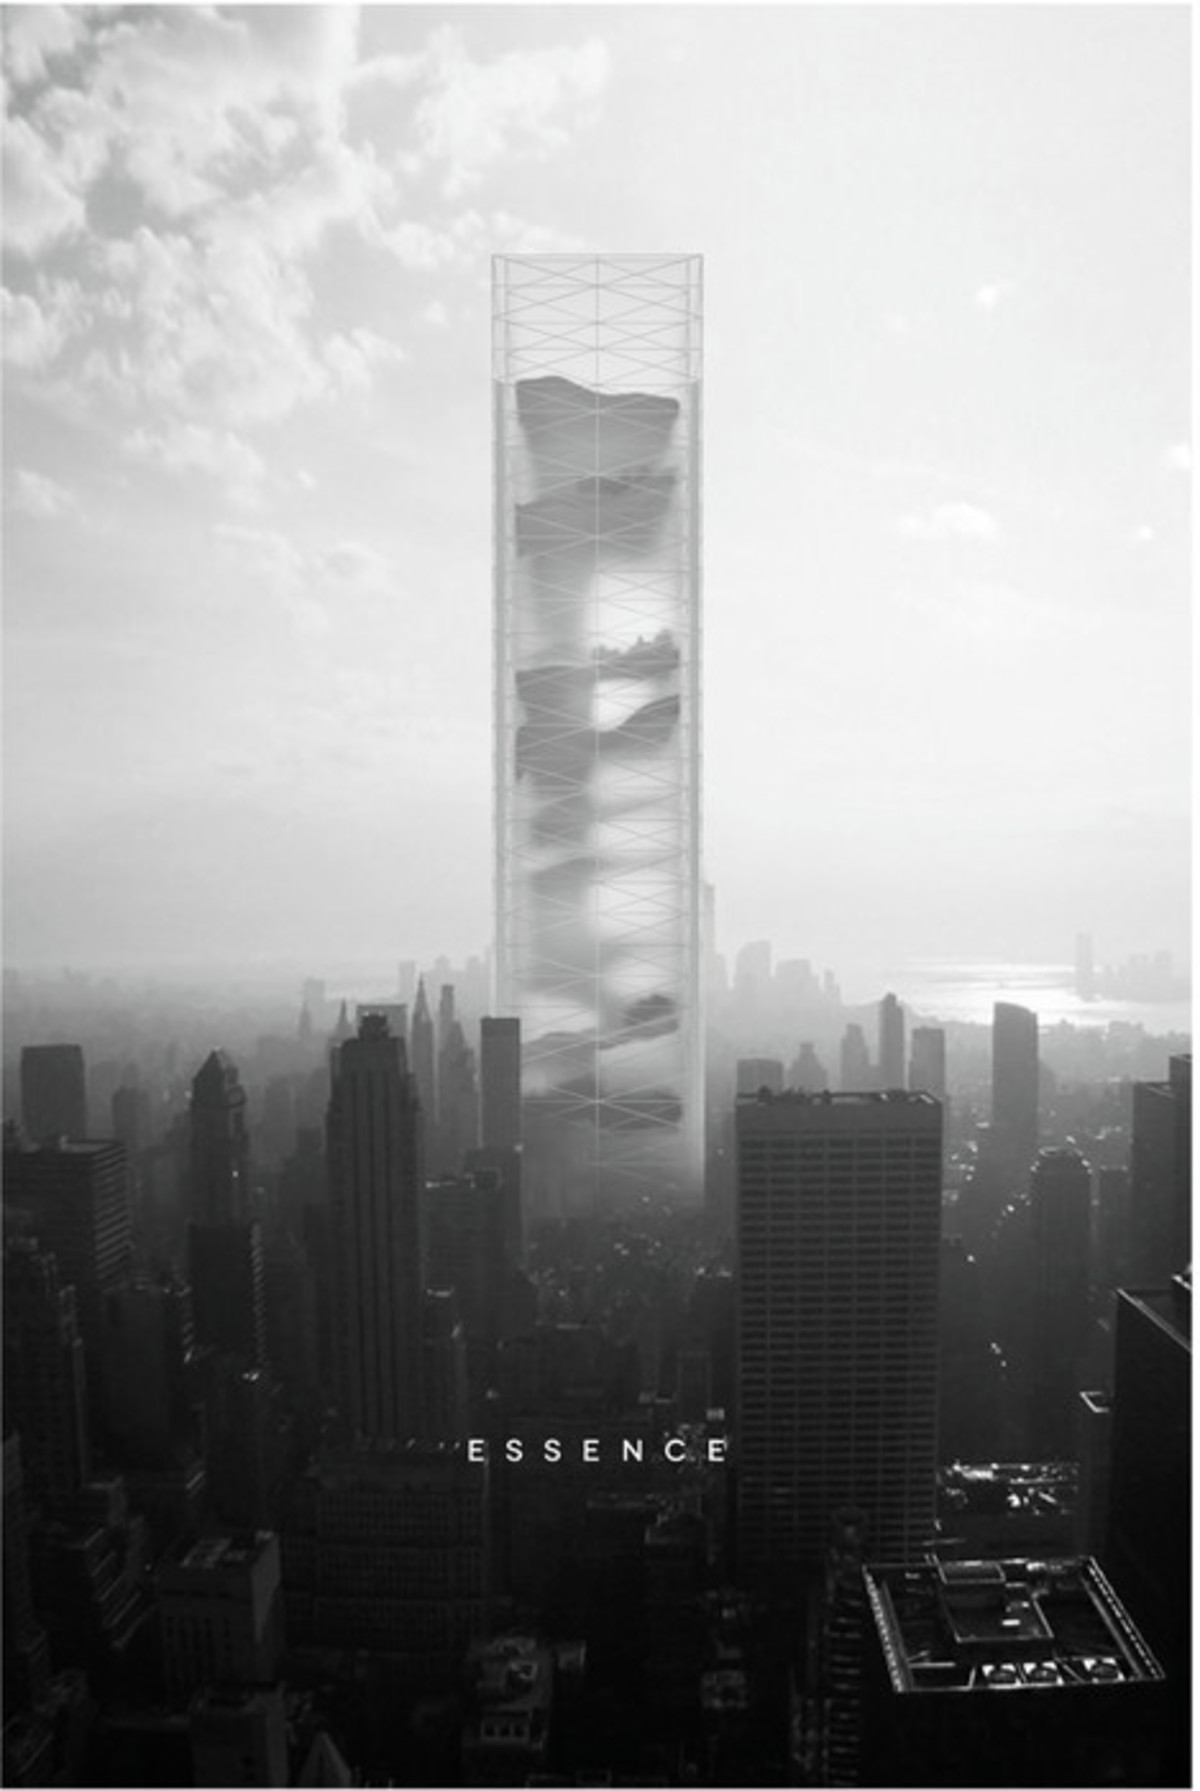 Essence Skyscraper - I miesjce w konkursie Skyscraper Competition 2015; autorzy: Ewa Odyjas, Agnieszka Morga, Konrad Basan i Jakub Pudo